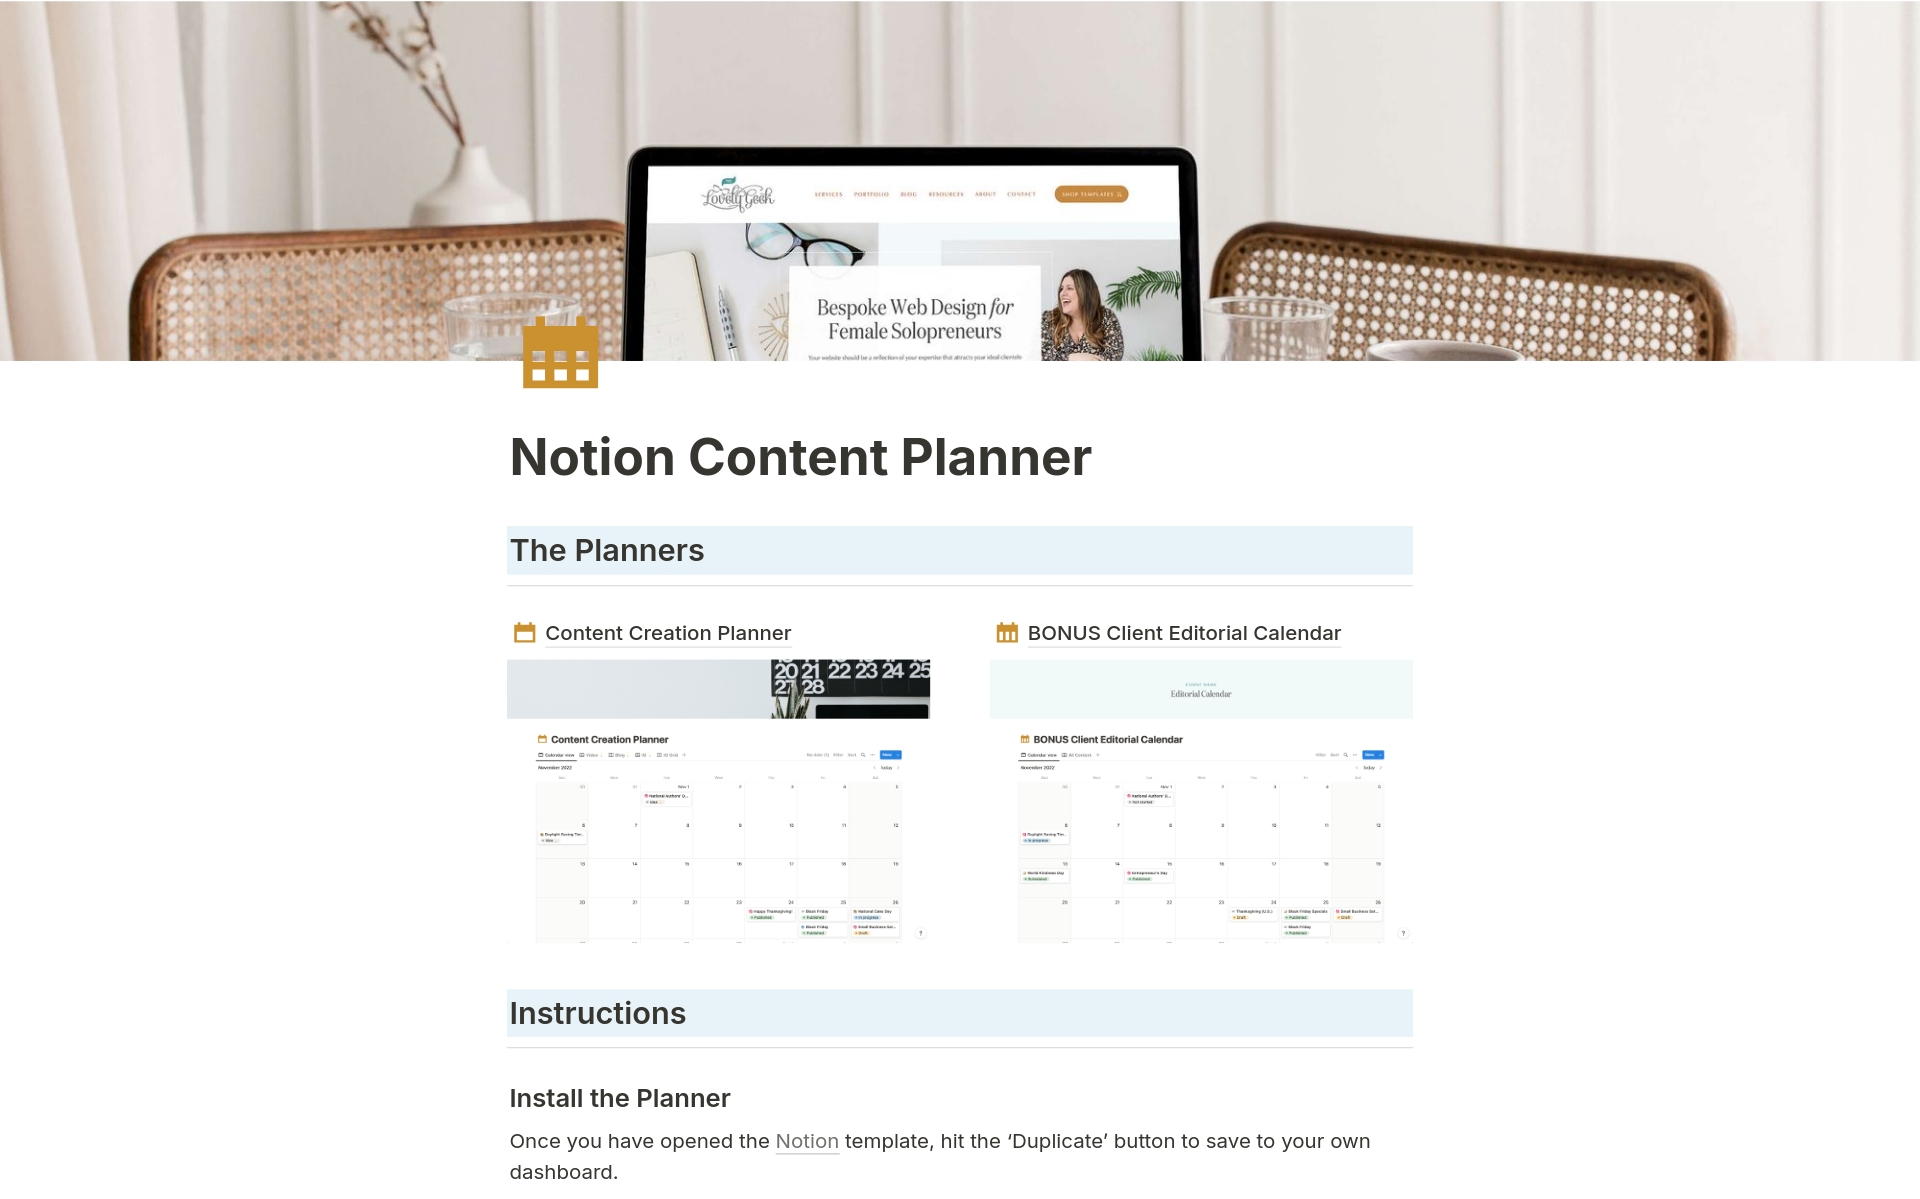 Uma prévia do modelo para Content Creation Planner